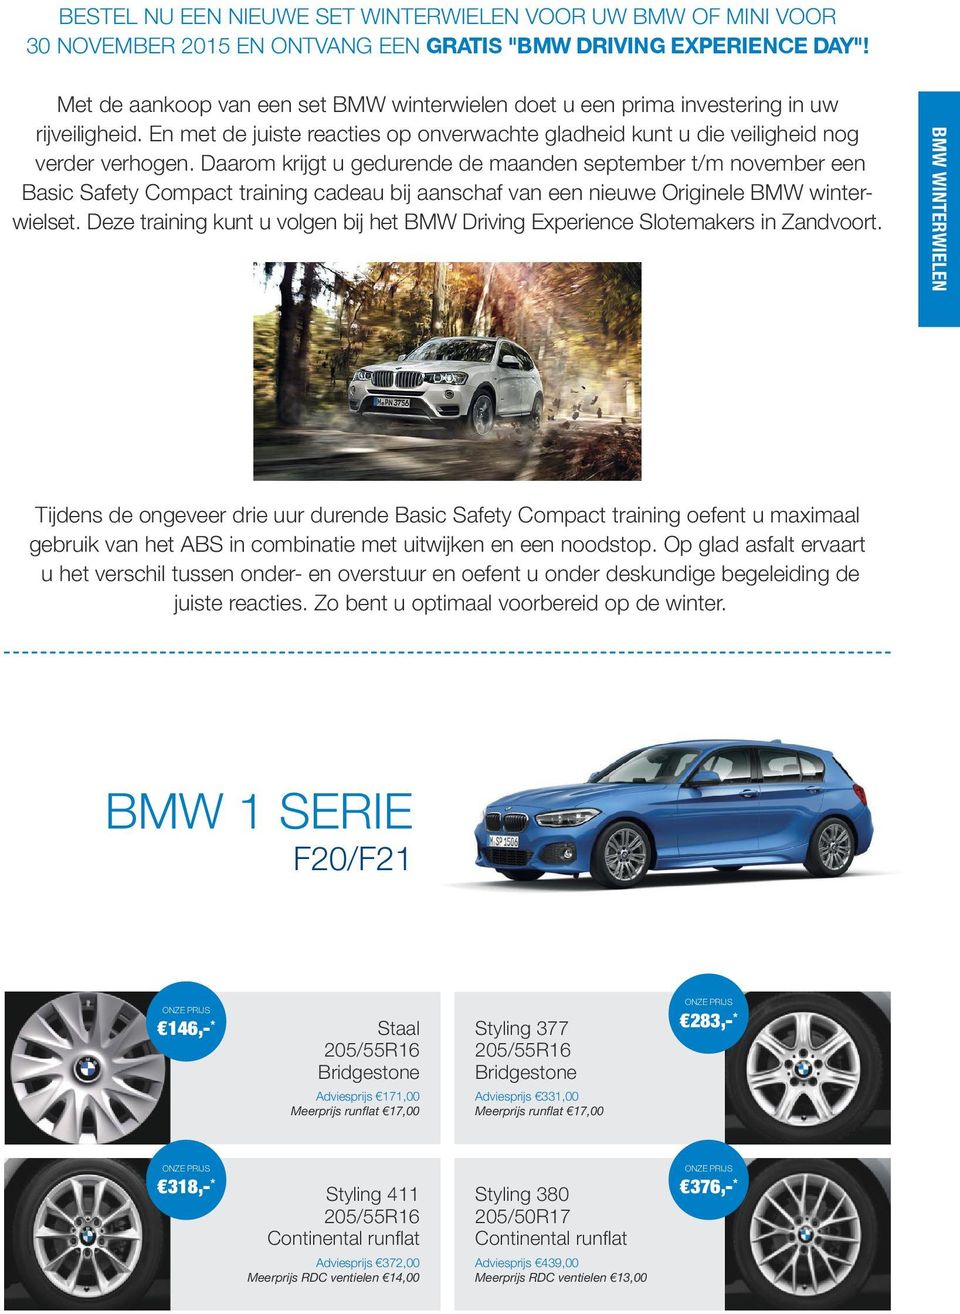 Daarom krijgt u gedurende de maanden september t/m november een Basic Safety Compact training cadeau bij aanschaf van een nieuwe Originele BMW winterwielset.